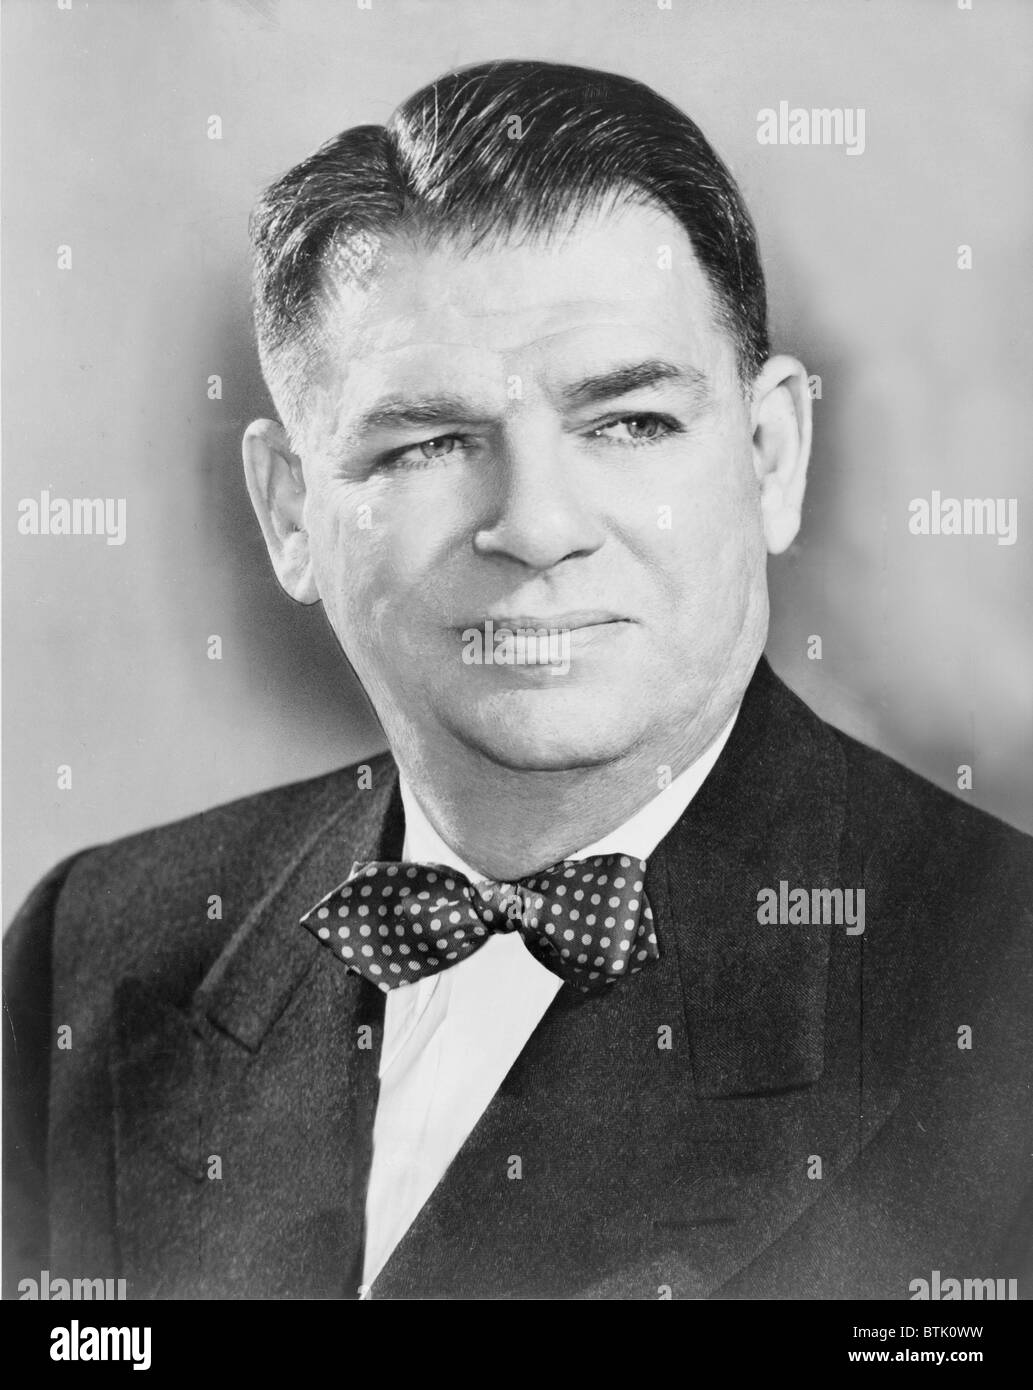 Oscar Hammerstein (1895-1960), war der Lyriker Richard Rogers Musik während des Goldenen Zeitalters des Broadway-Musical-Komödie. Stockfoto